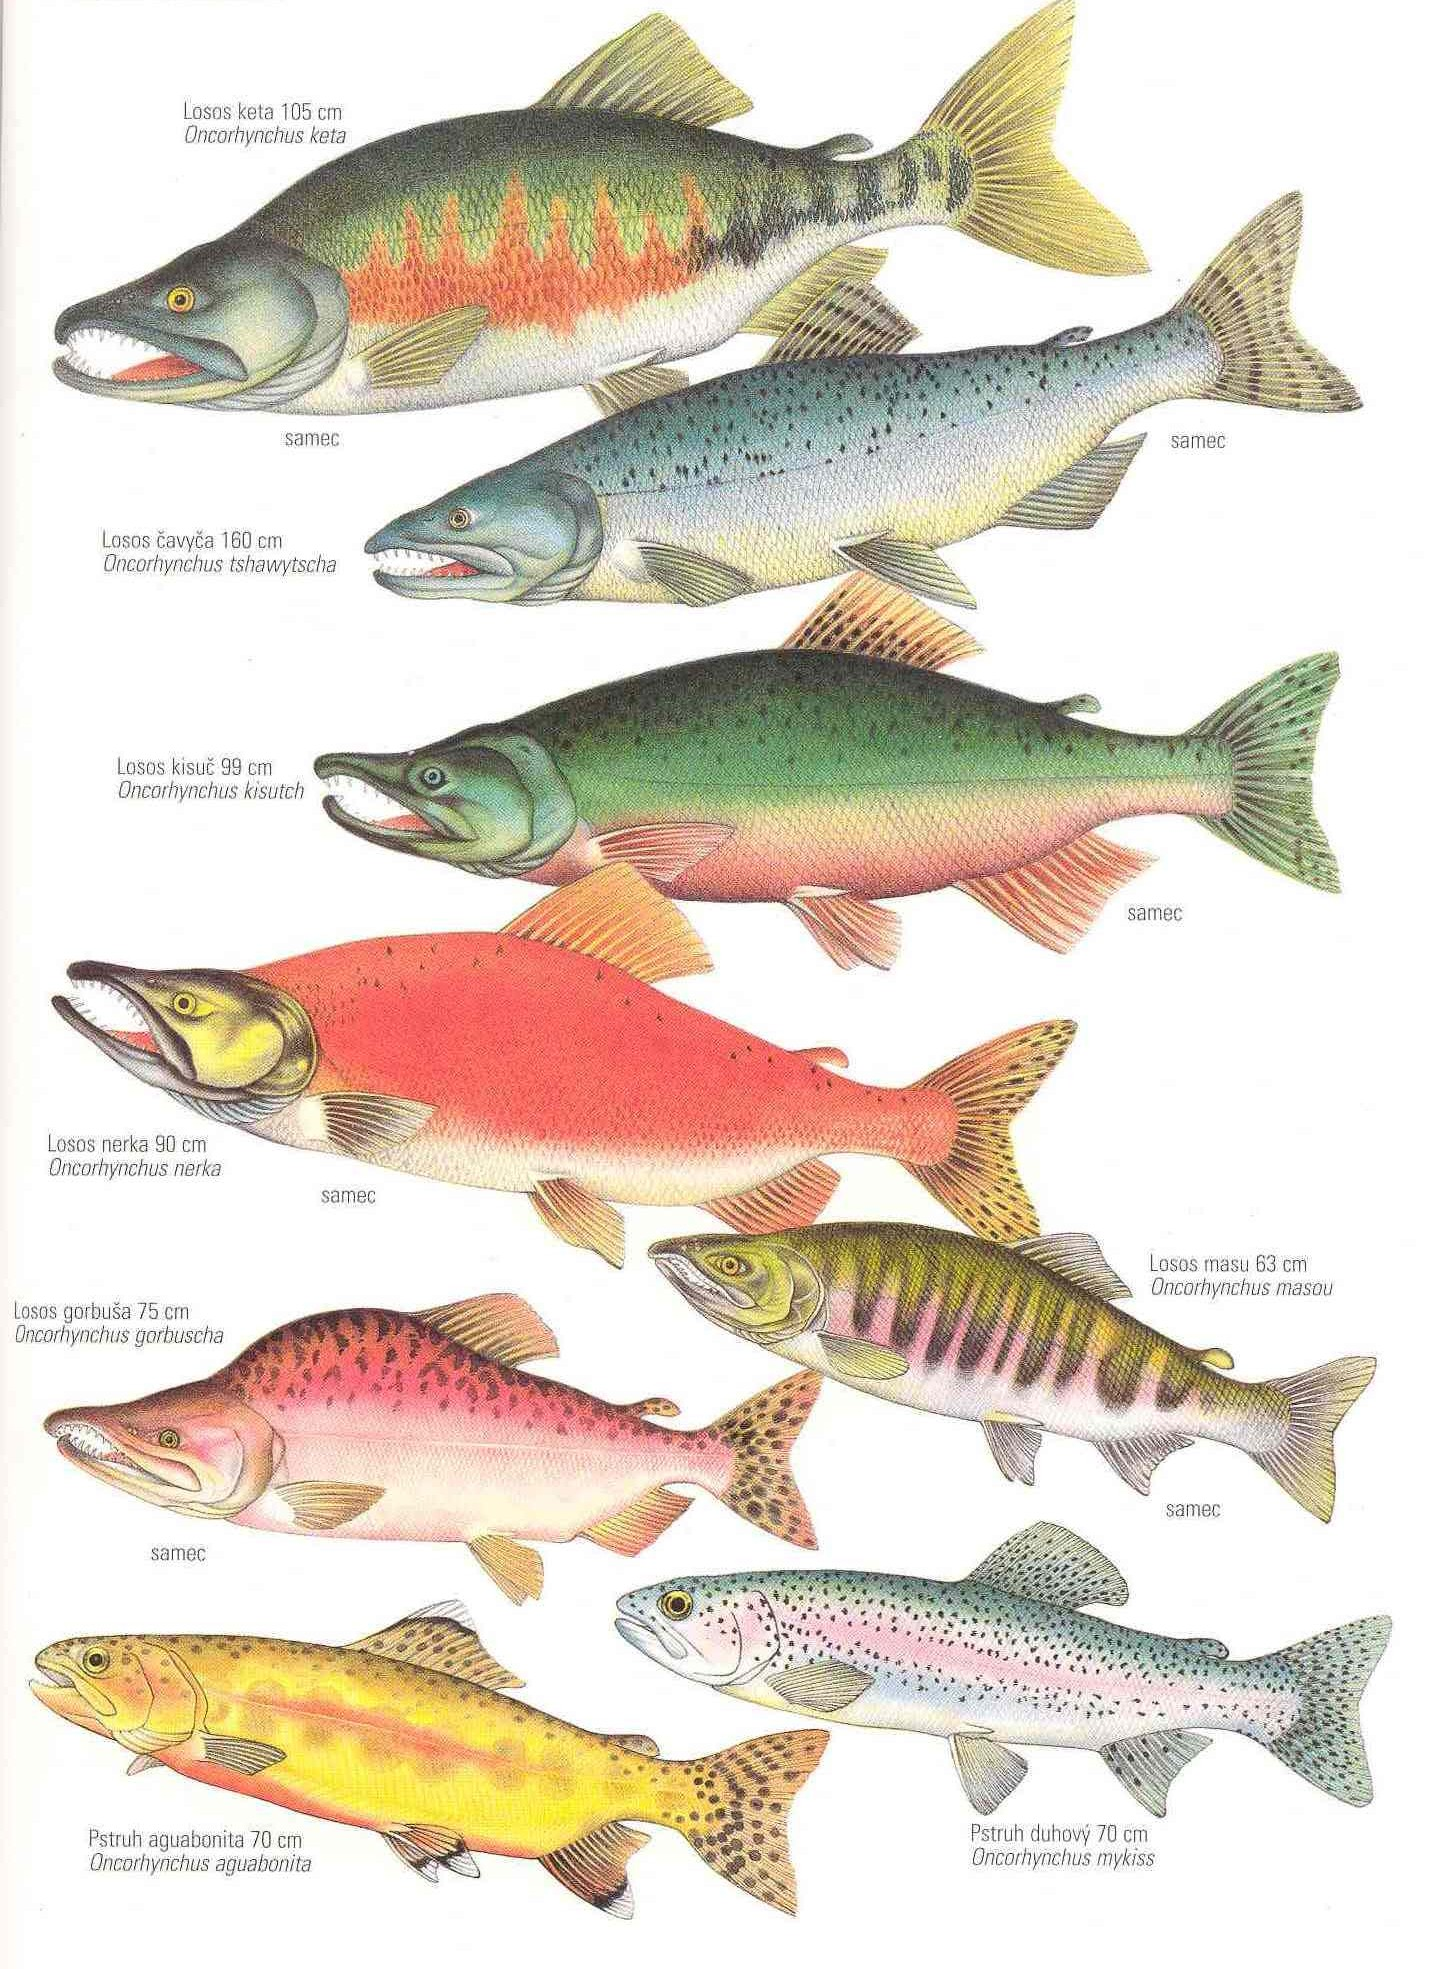 Řád: LOSOSI Salmoniformes Vřetenovité tělo, drobné šupiny, tuková ploutvička, pylorické